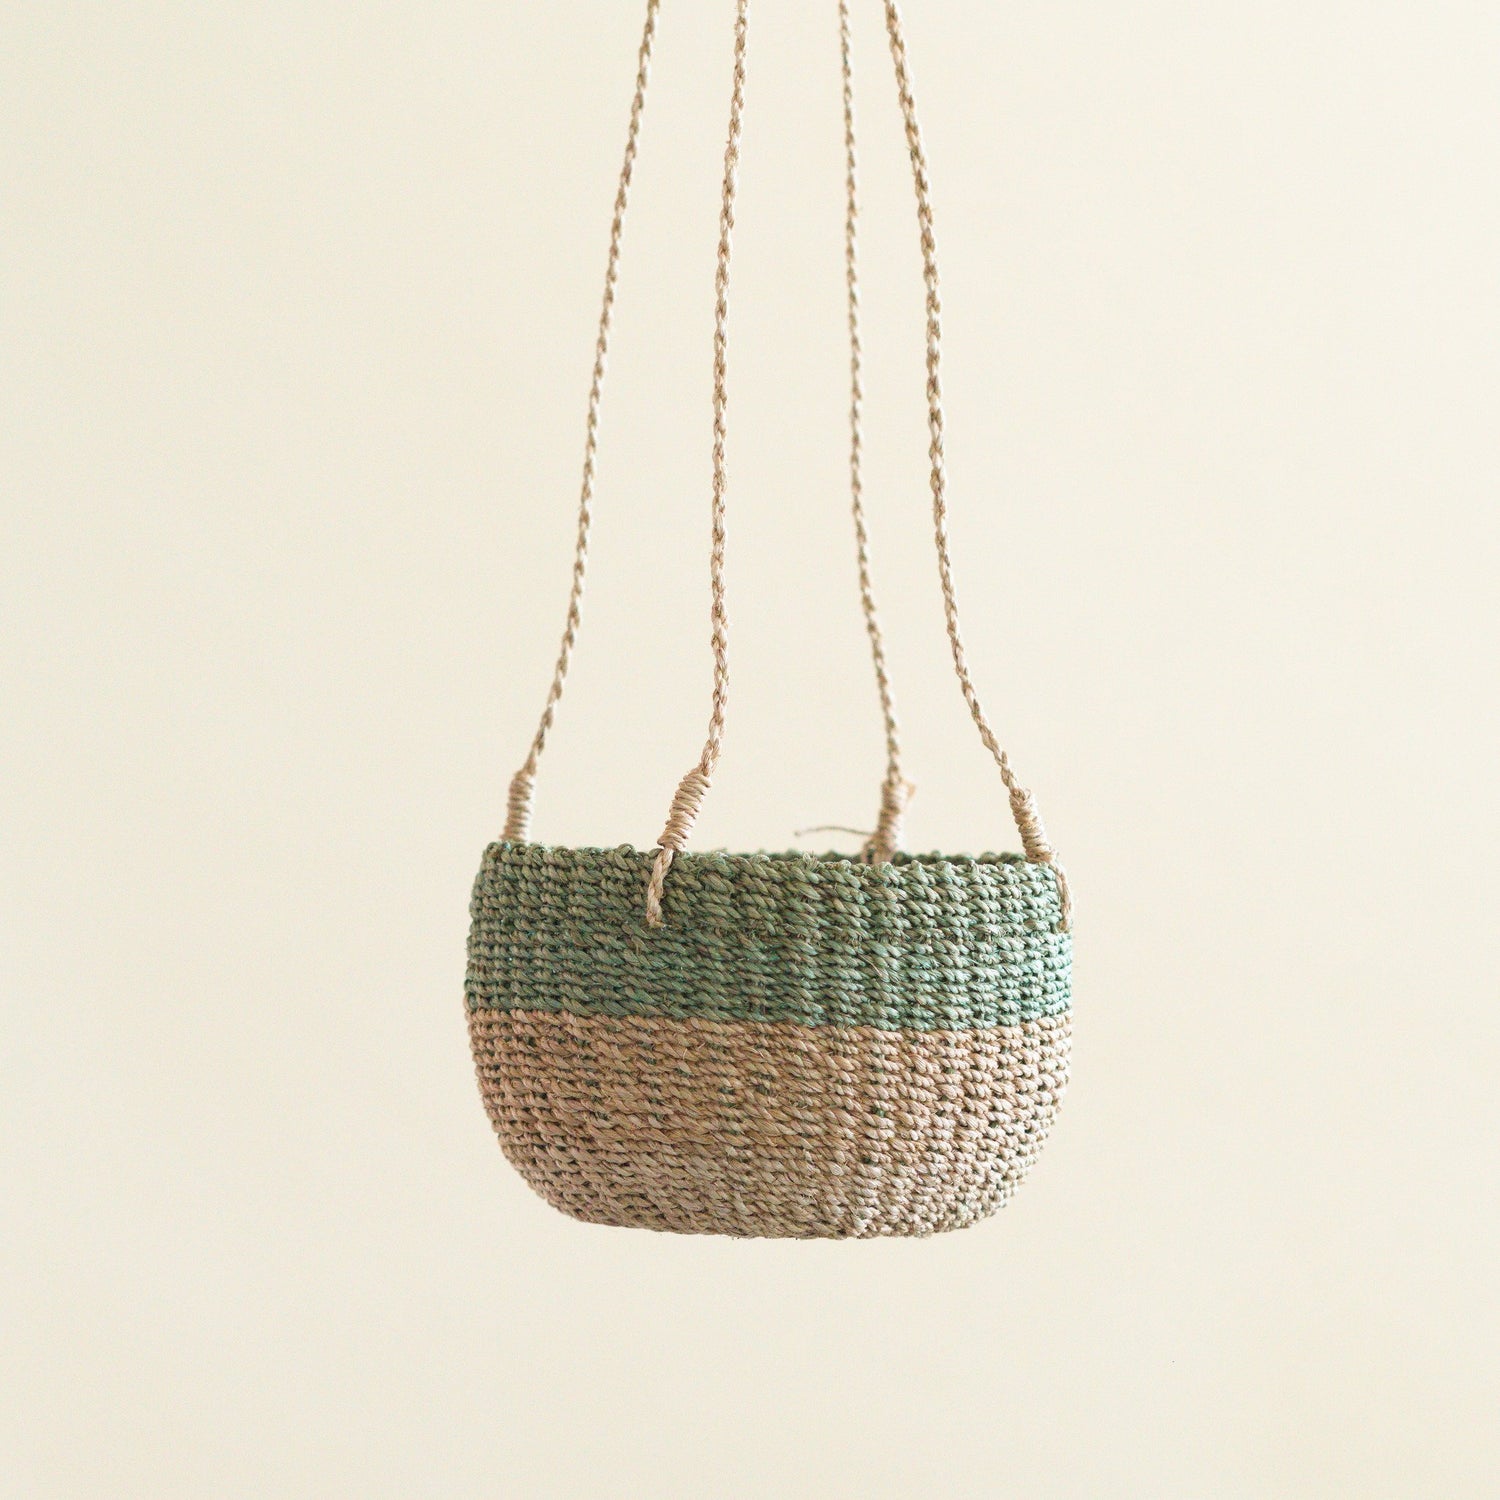 Baskets - Natural + Sage Hanging Planter - Hanging Bin | LIKHÂ - LIKHÂ